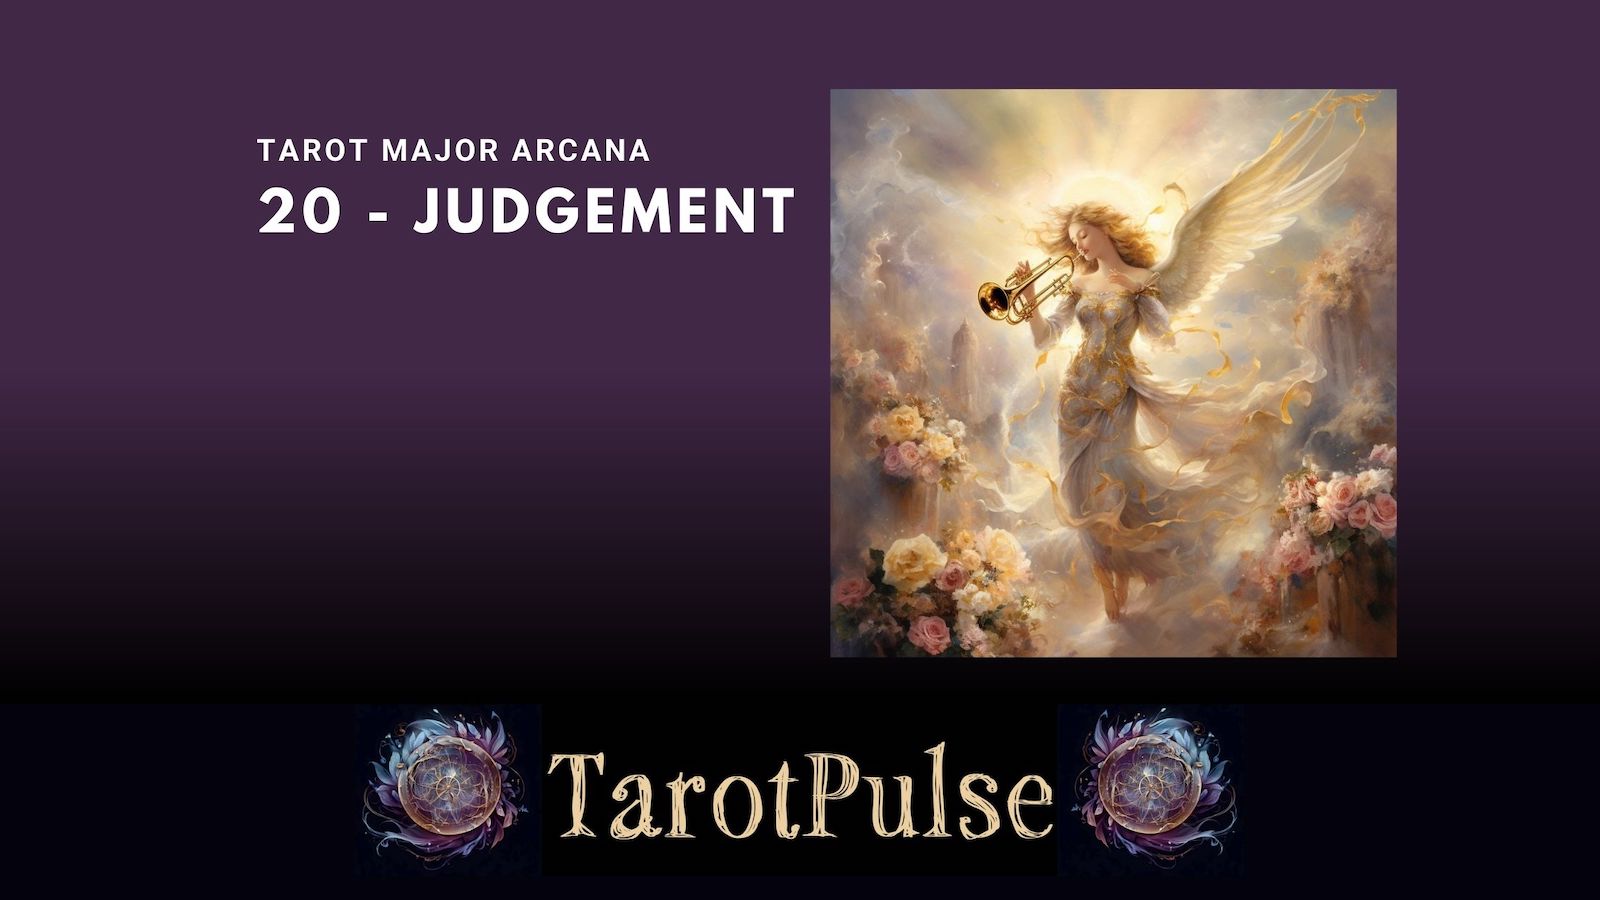 Tarot Major Arcana 20 - Judgement